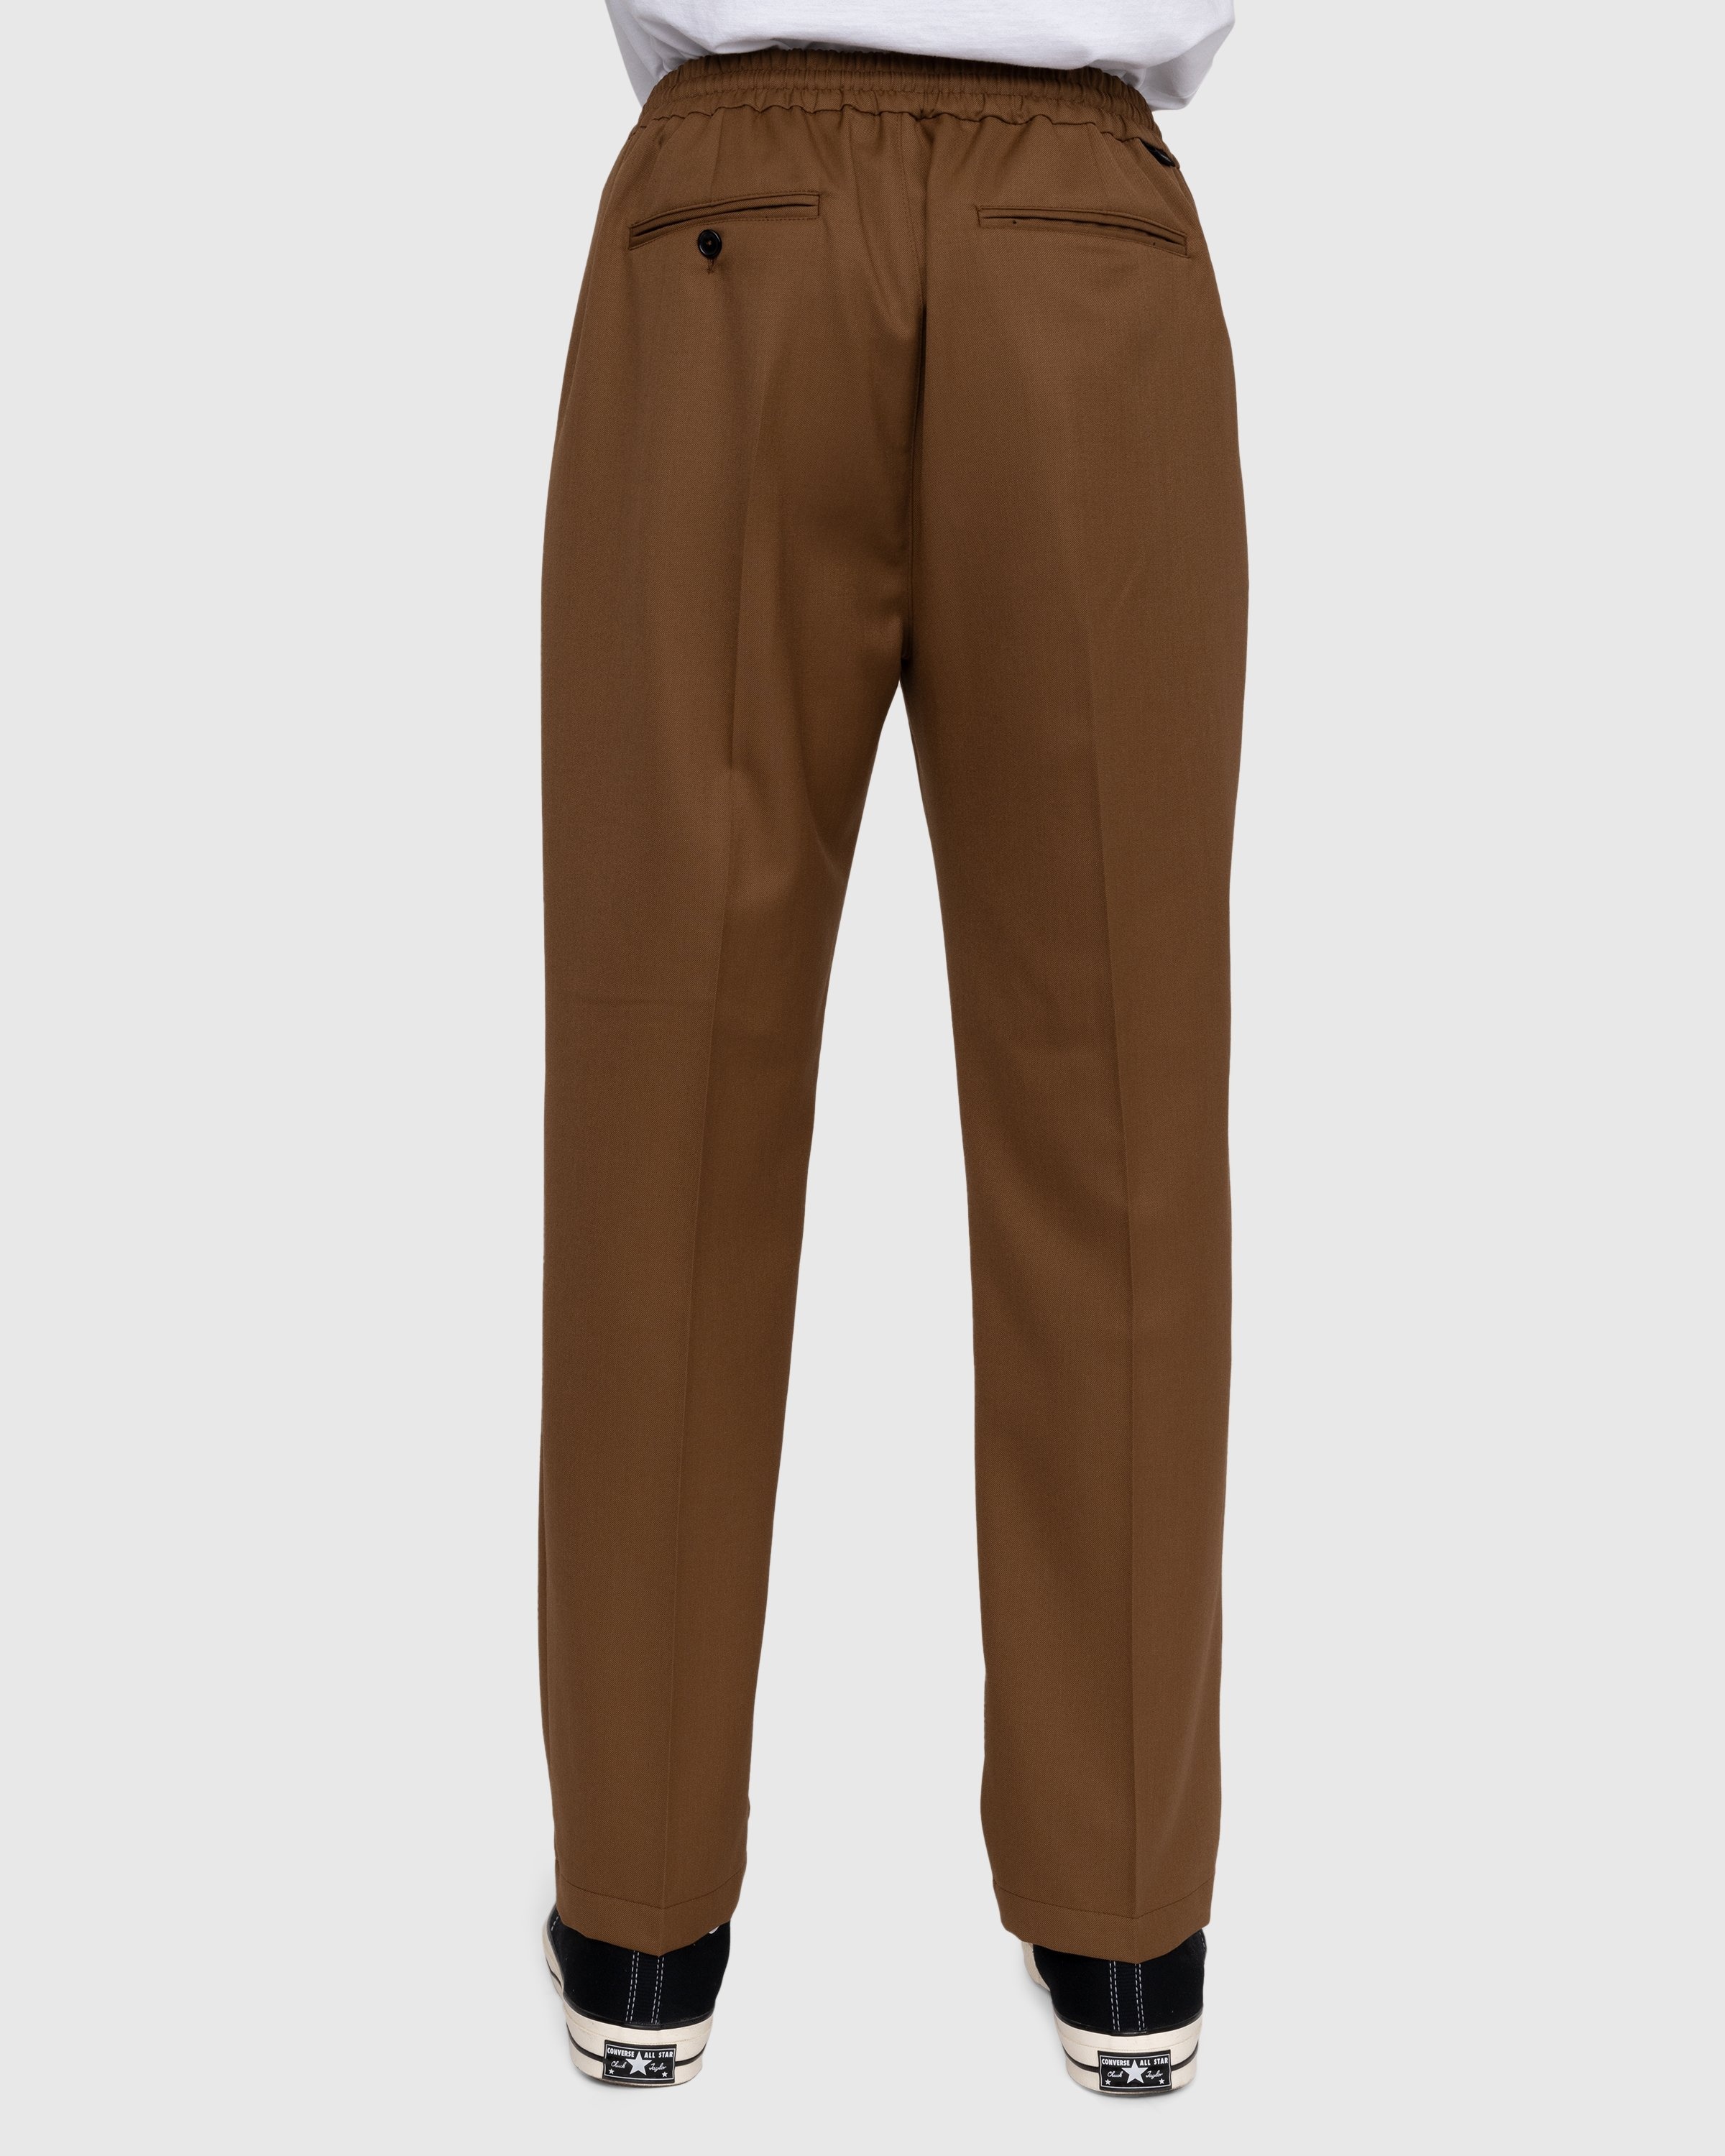 Highsnobiety – Wool Blend Elastic Pants Brown - Trousers - Brown - Image 4